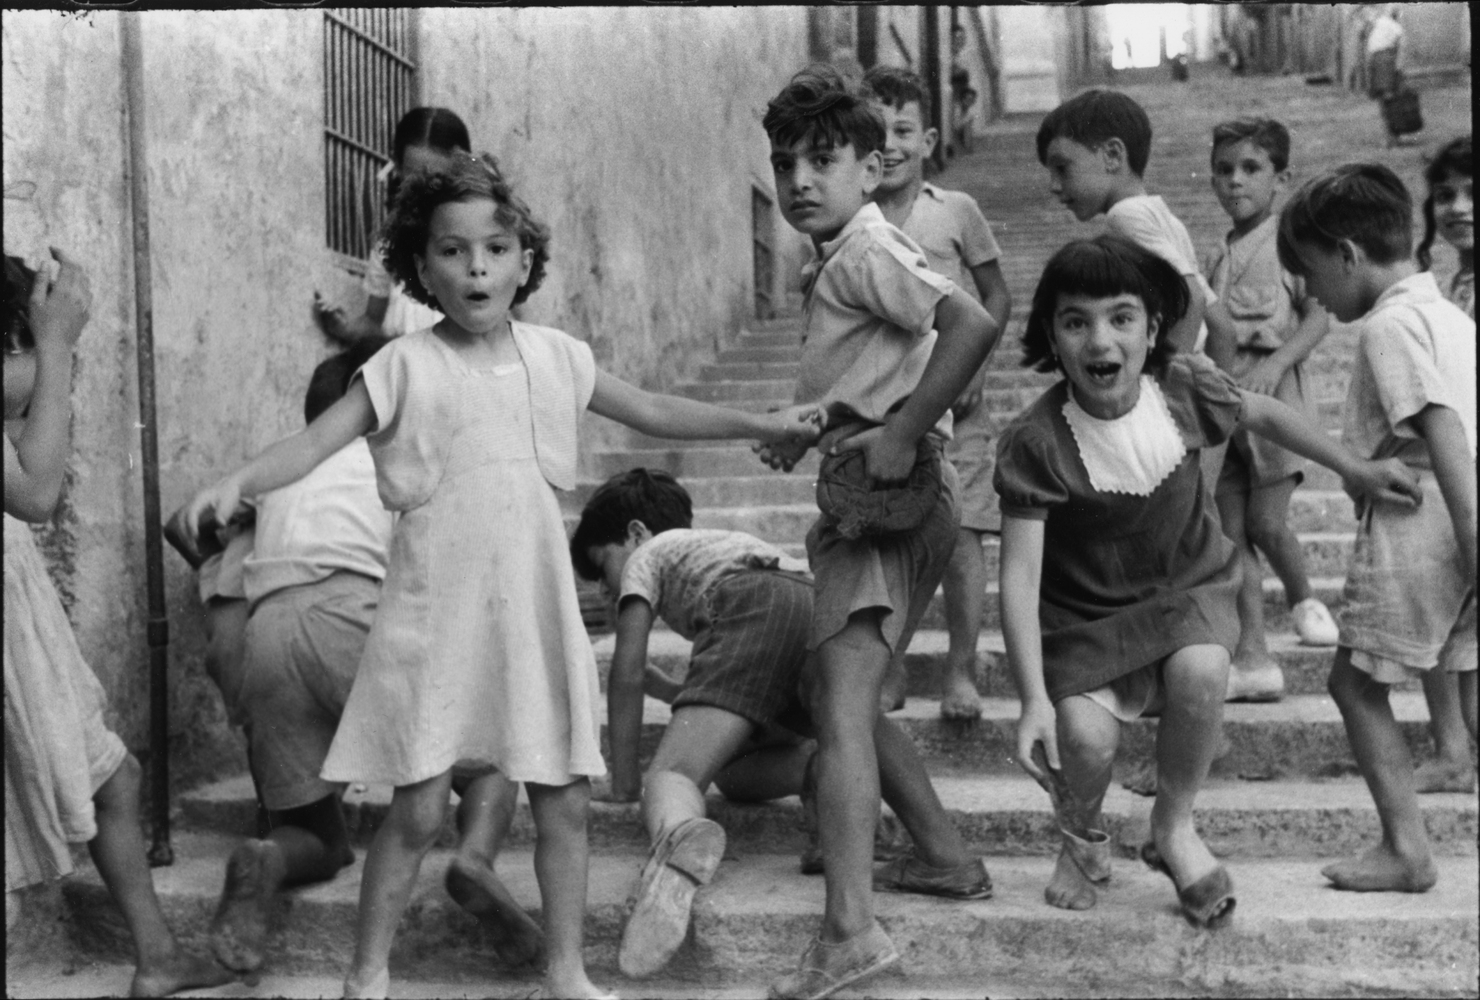 Malte, 1955